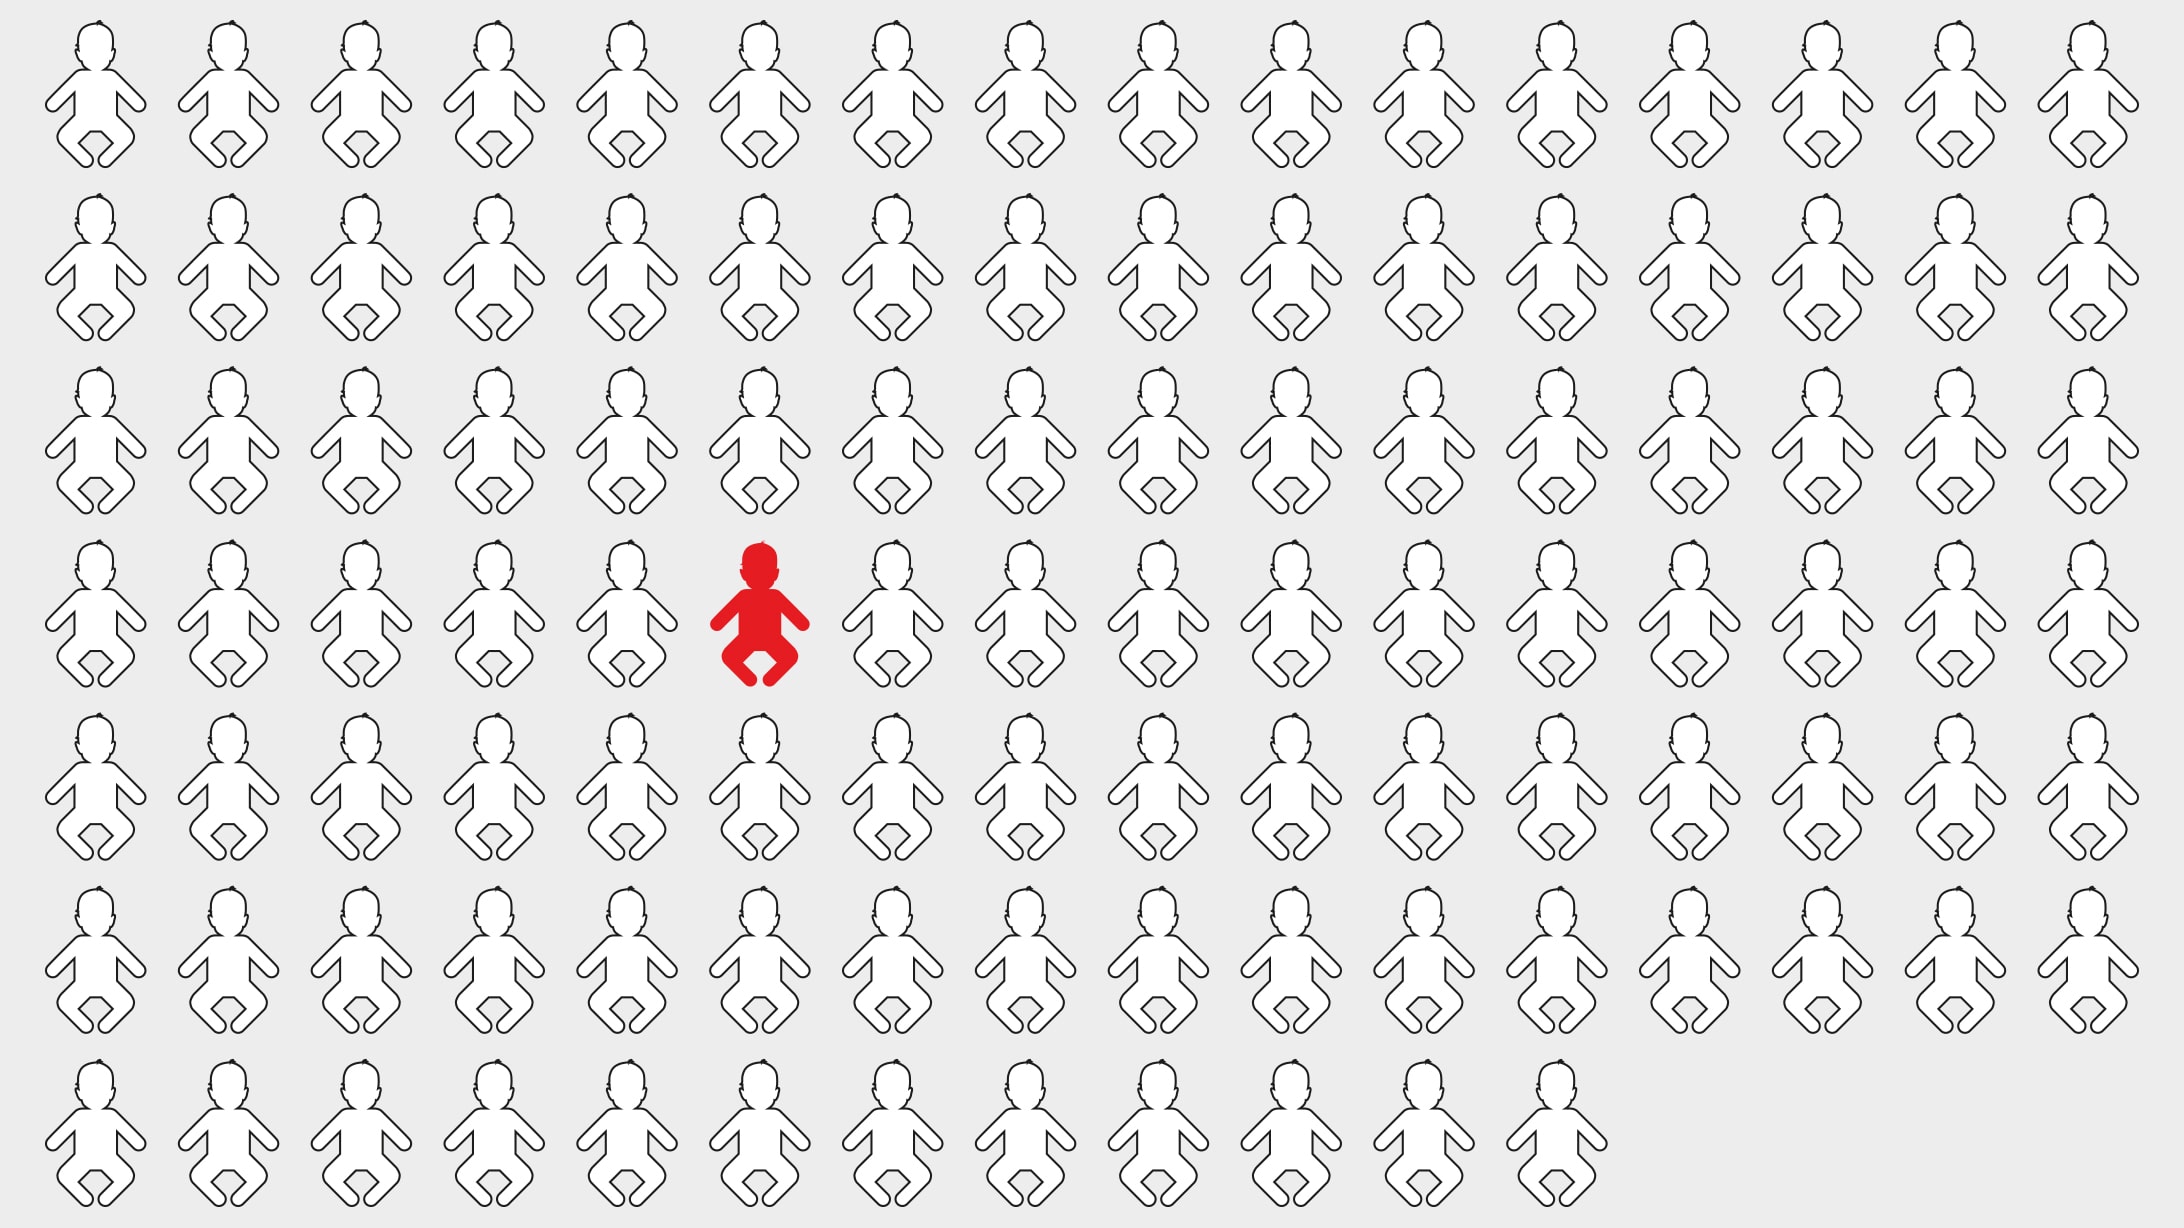 Alkohol in der Schwangerschaft: Eine Grafik mit 100 Umrissen von Babys. Eines davon ist rot.